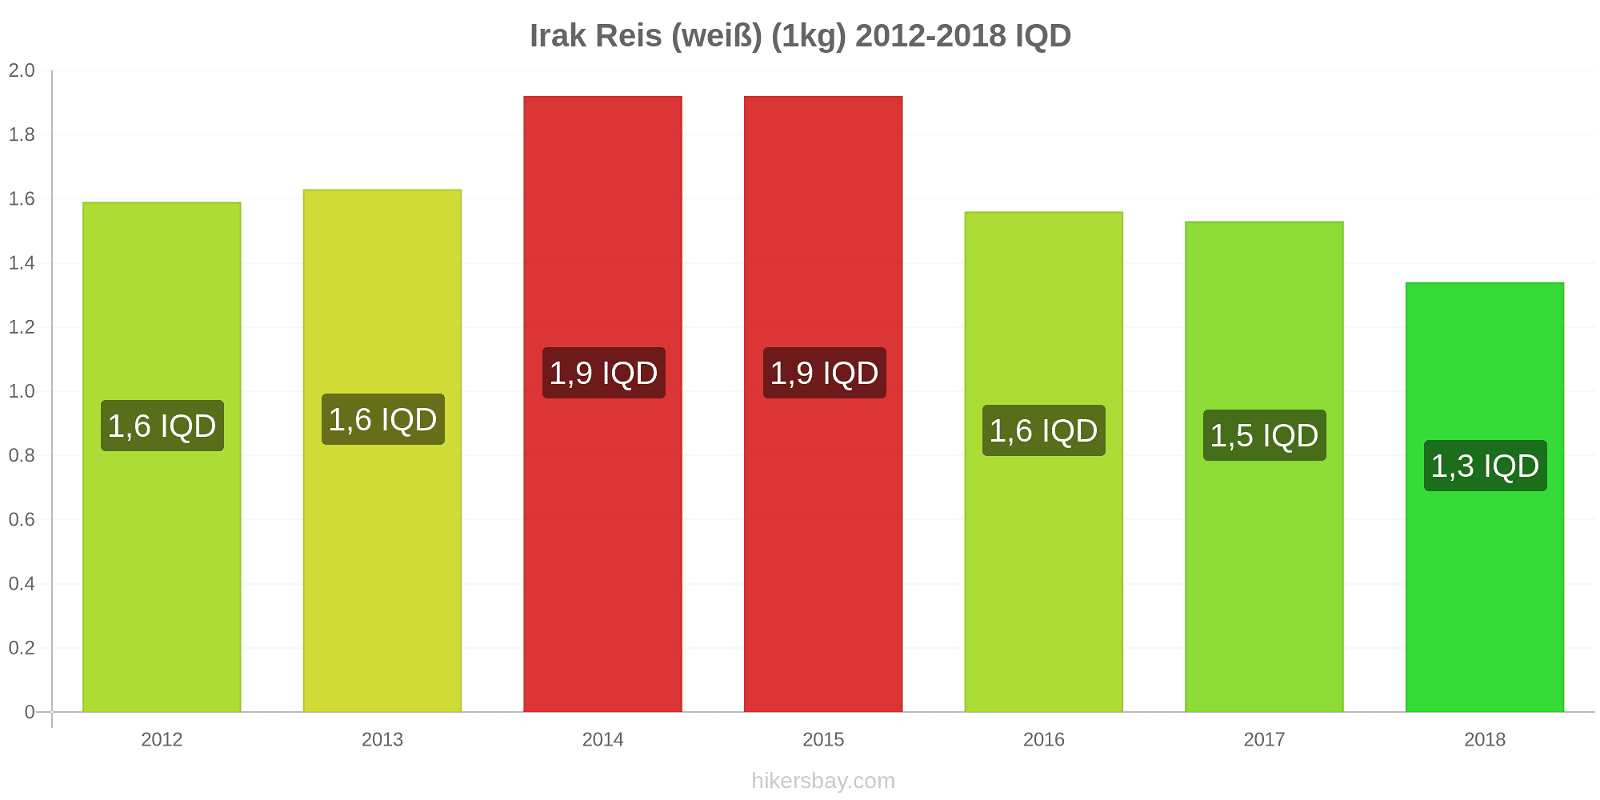 Irak Preisänderungen Reis (weiß) (1kg) hikersbay.com